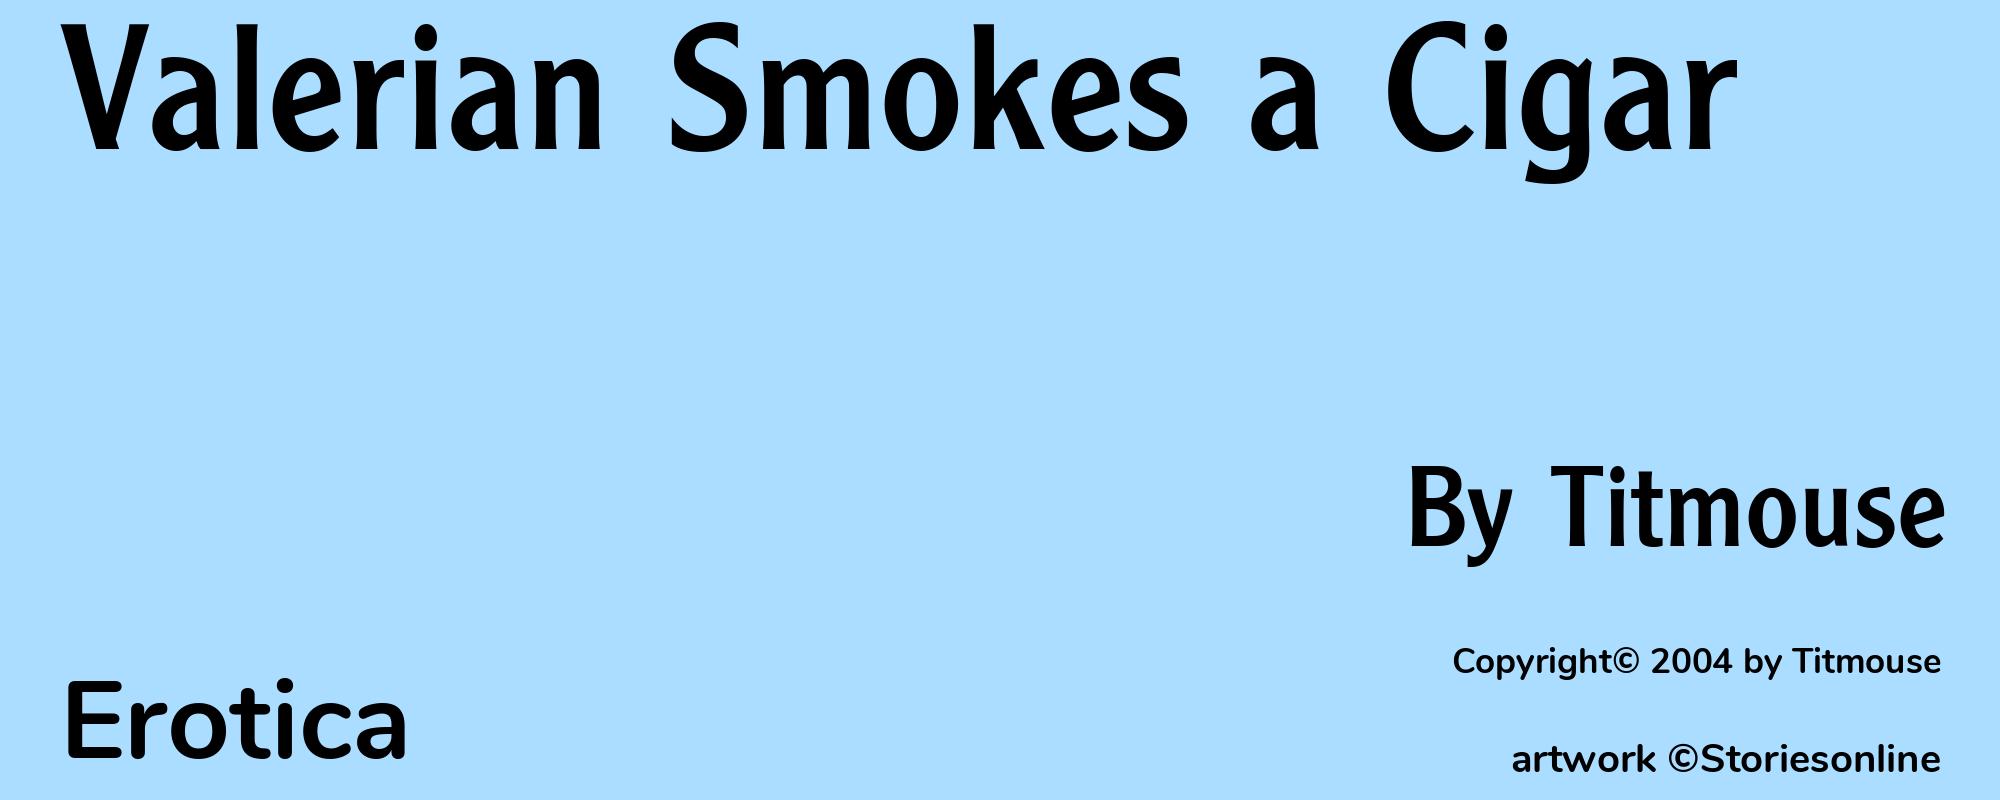 Valerian Smokes a Cigar - Cover